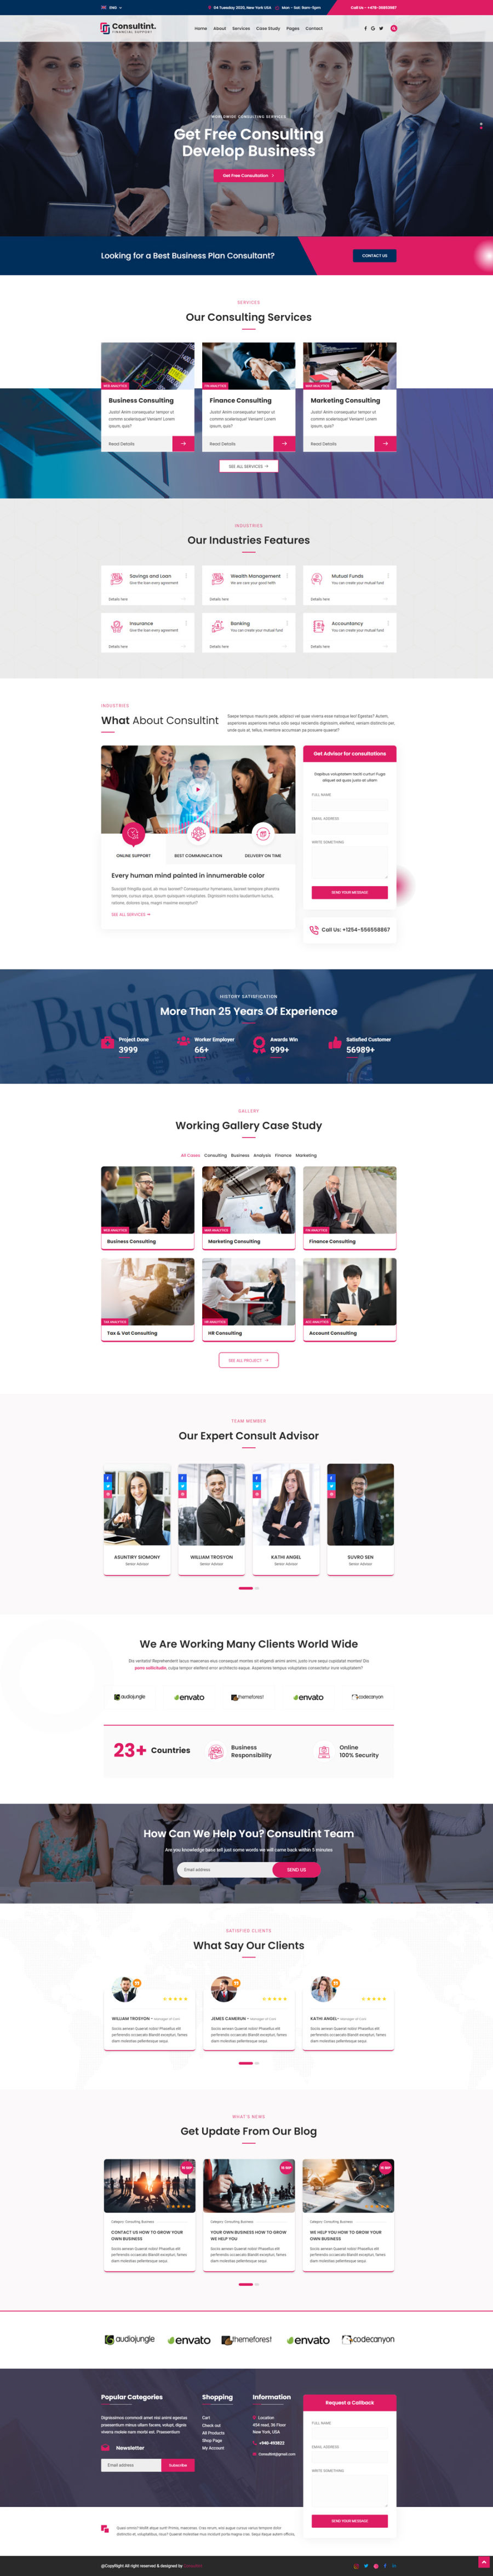 Consultint商业金融投资管理公司网站html模板